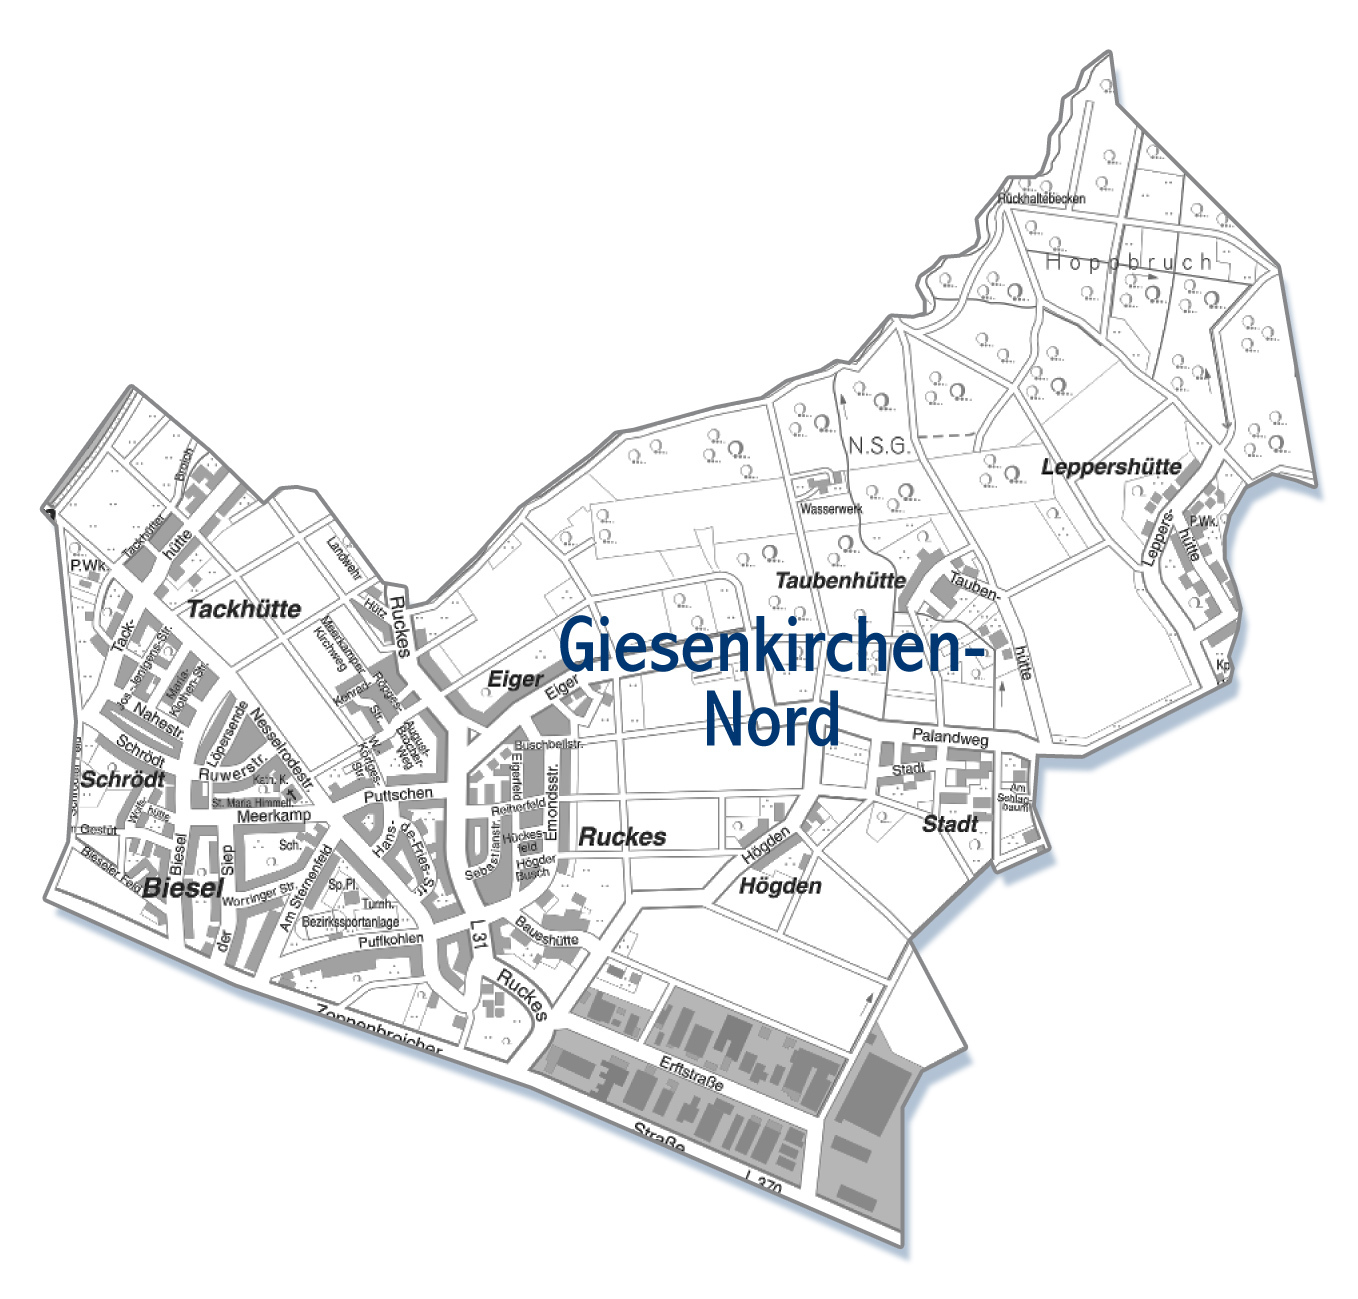 Giesenkirchen-Nord